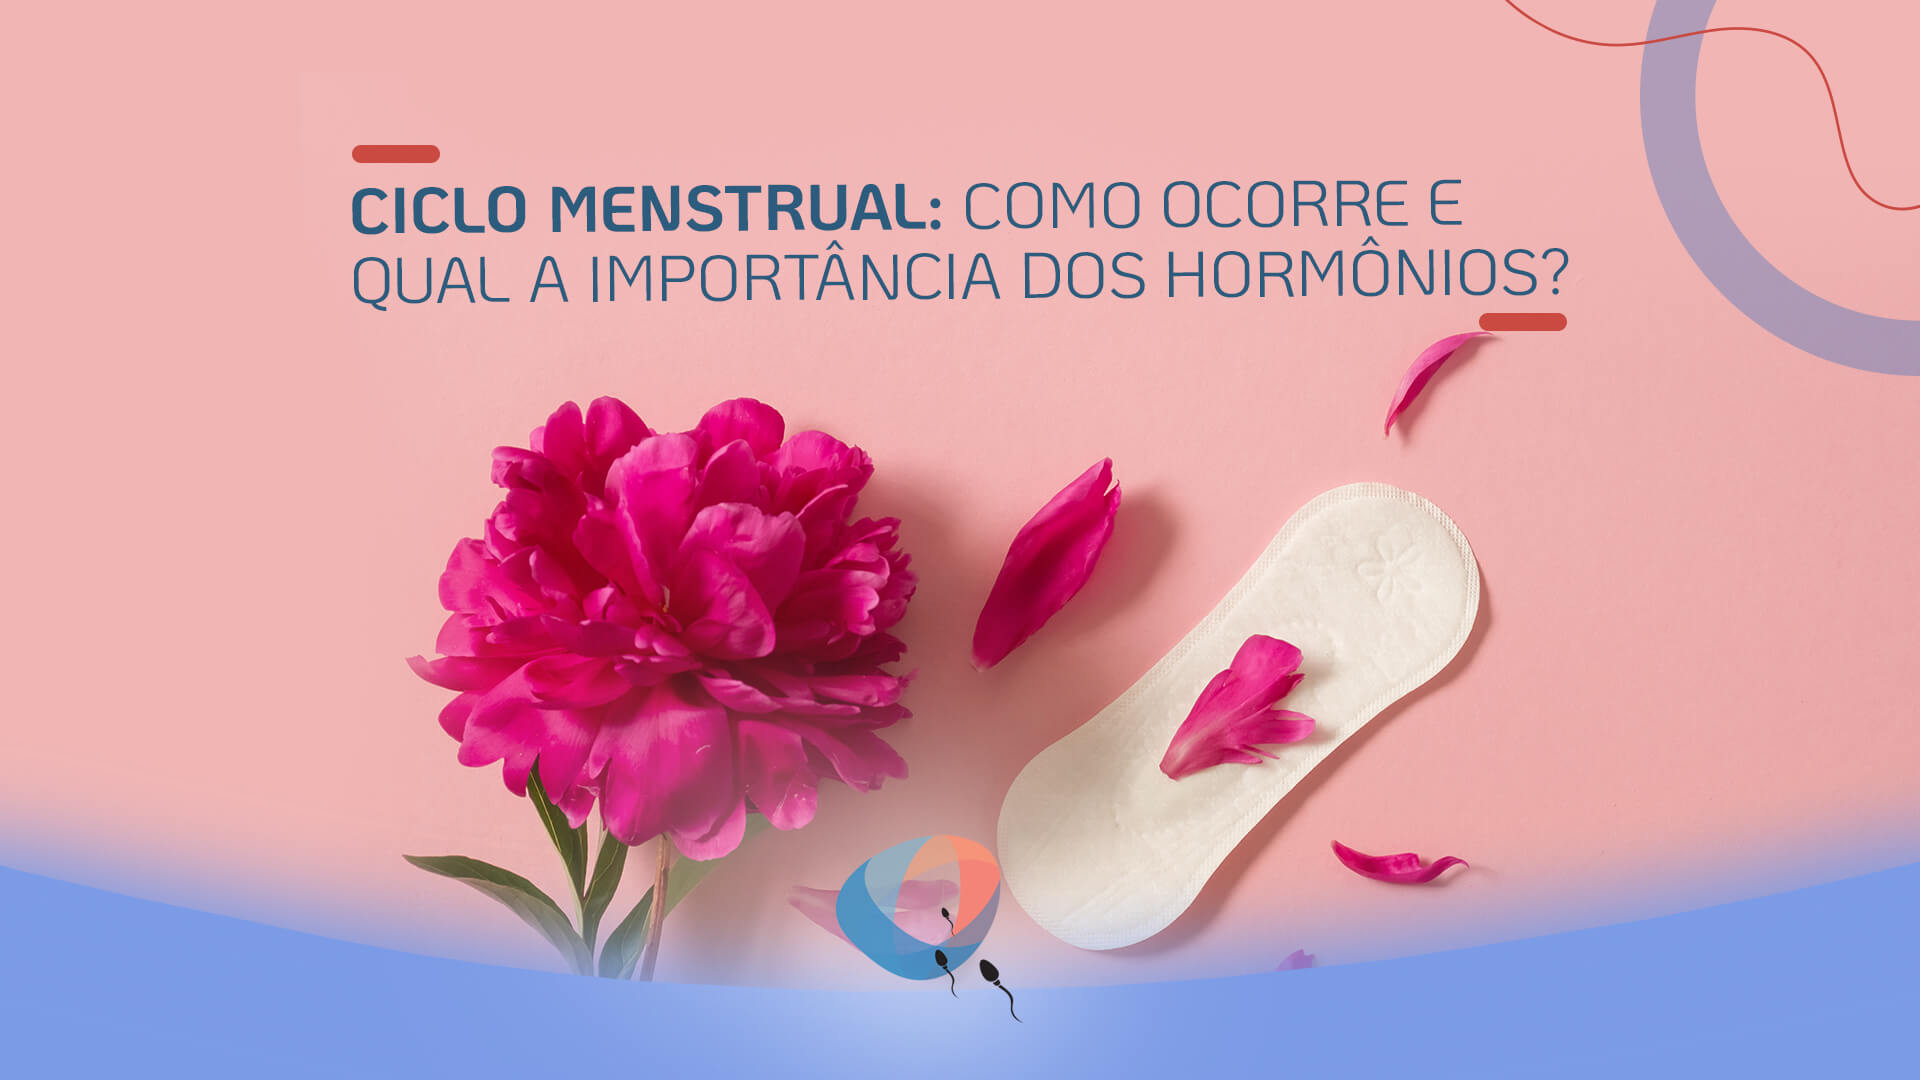 Ciclo menstrual: como ocorre e qual a importância dos hormônios?